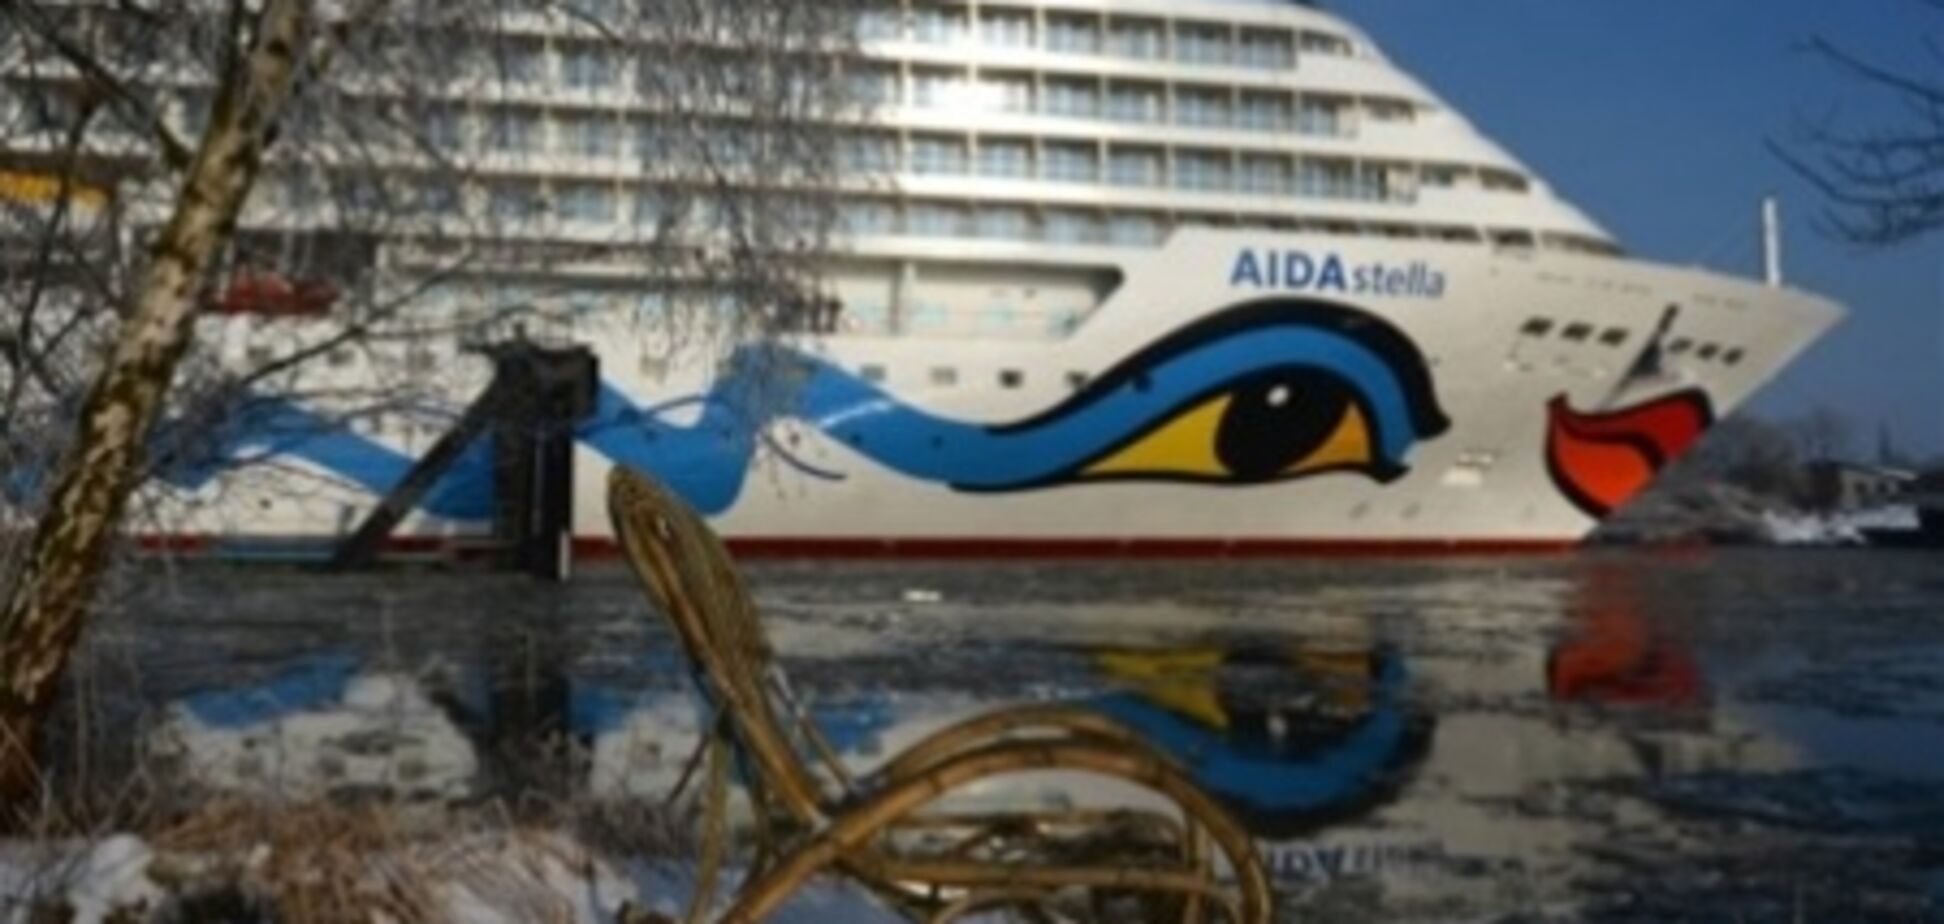 Круизный лайнер AIDAstella впервые зашел в порт Амстердама